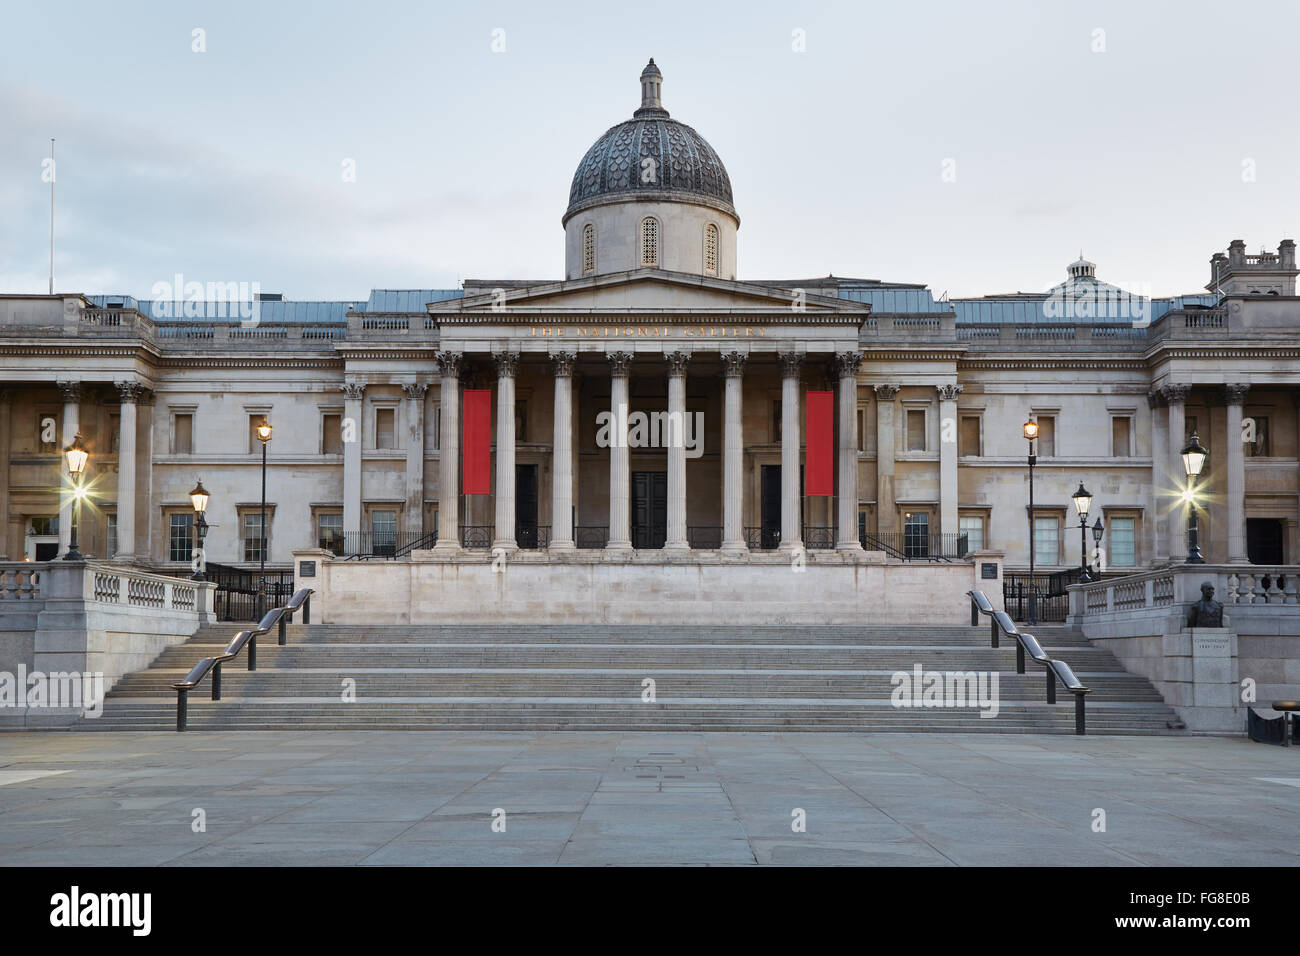 La Galerie nationale des capacités dans la matinée à Londres, personne ne Banque D'Images